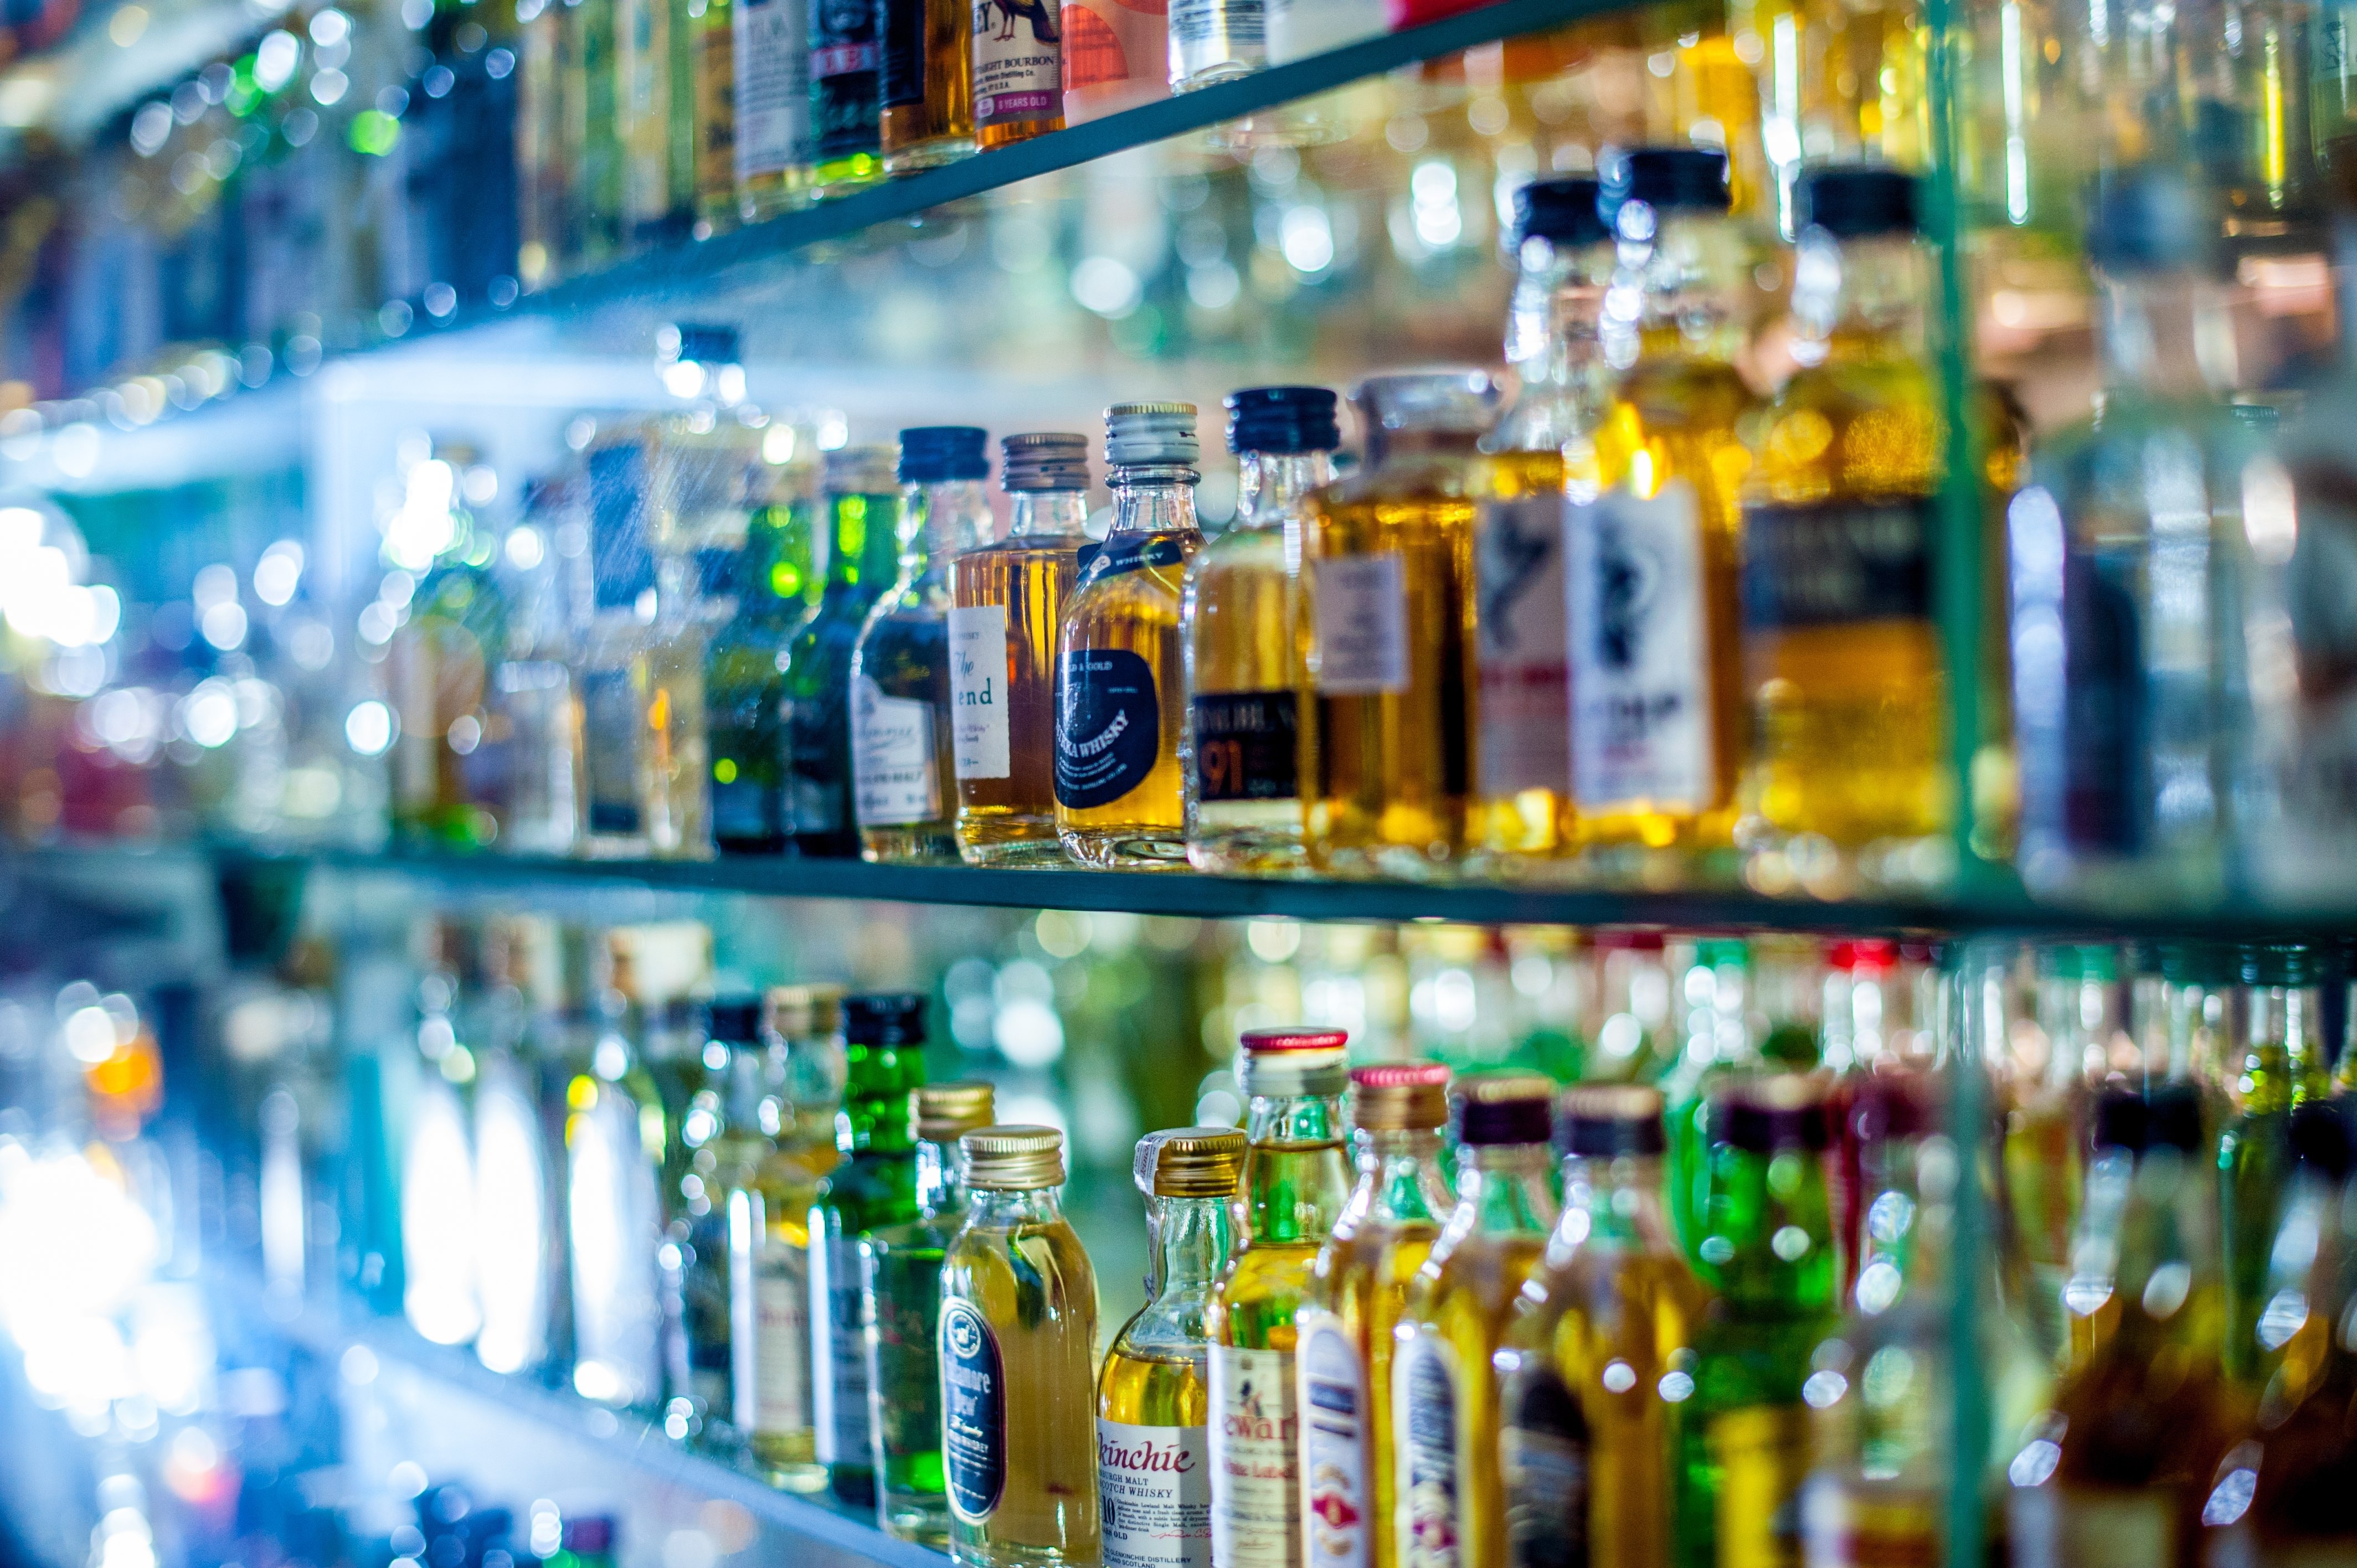 assorted bottles in glass shelves